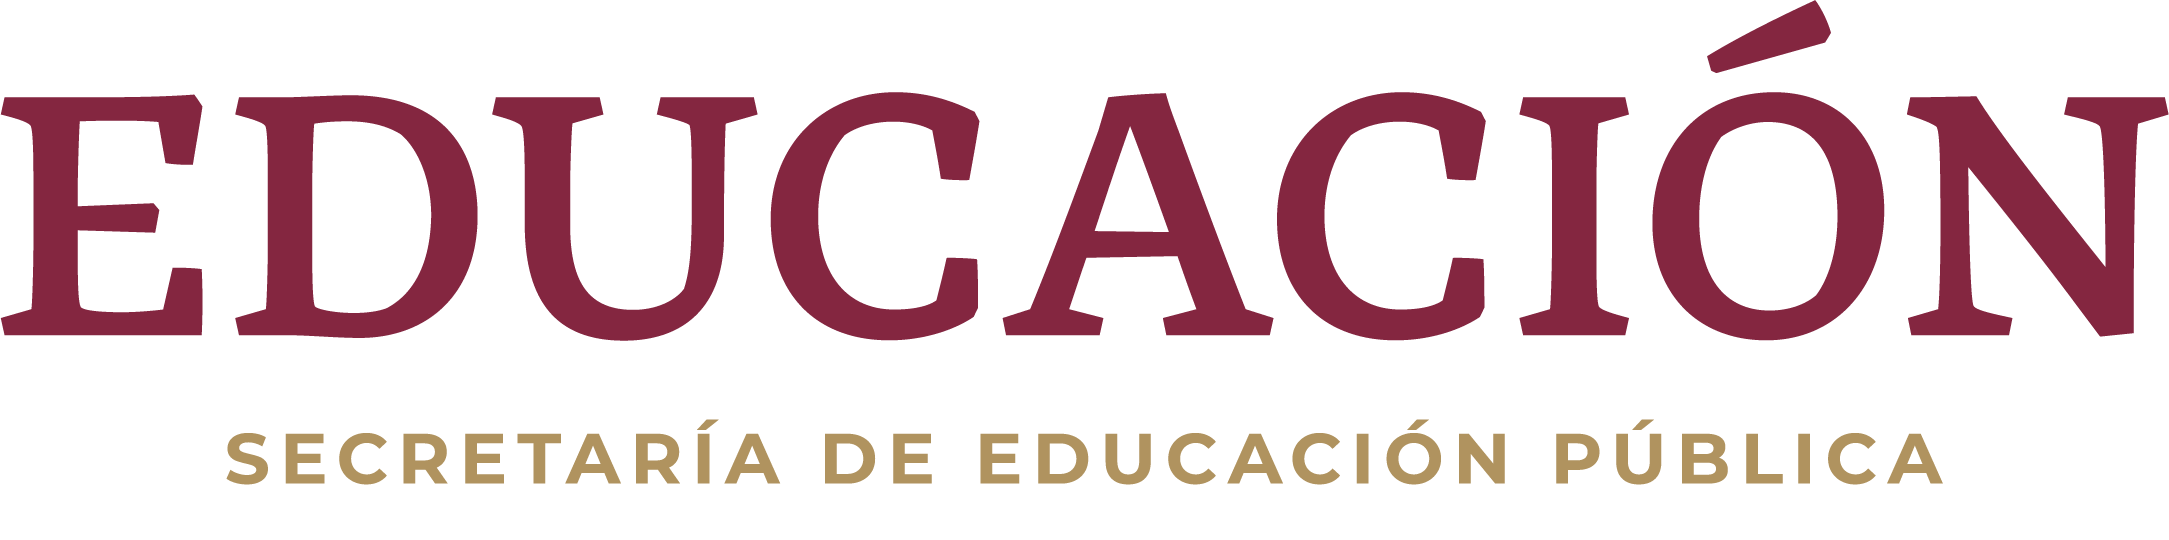 Secretaría de Educación Pública Logo